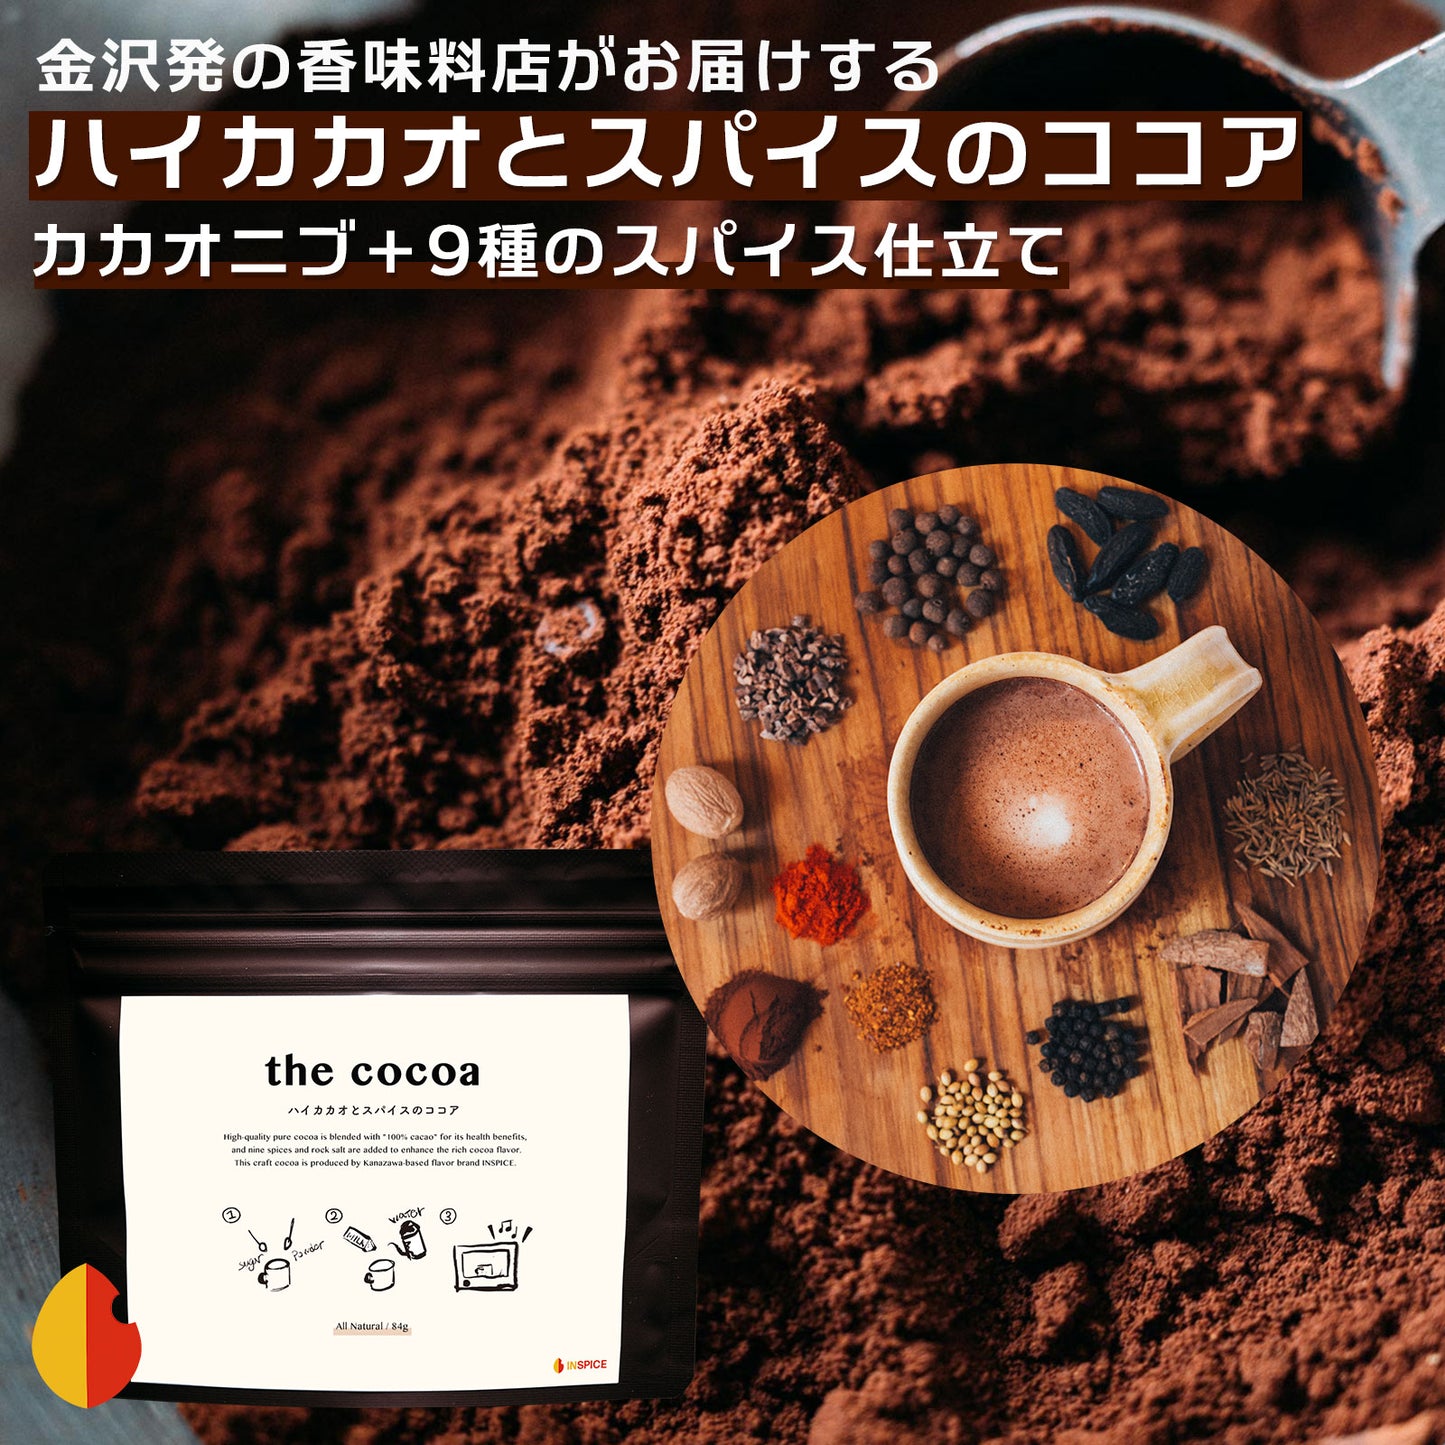 the cocoa「ハイカカオとスパイスのココア」／84g